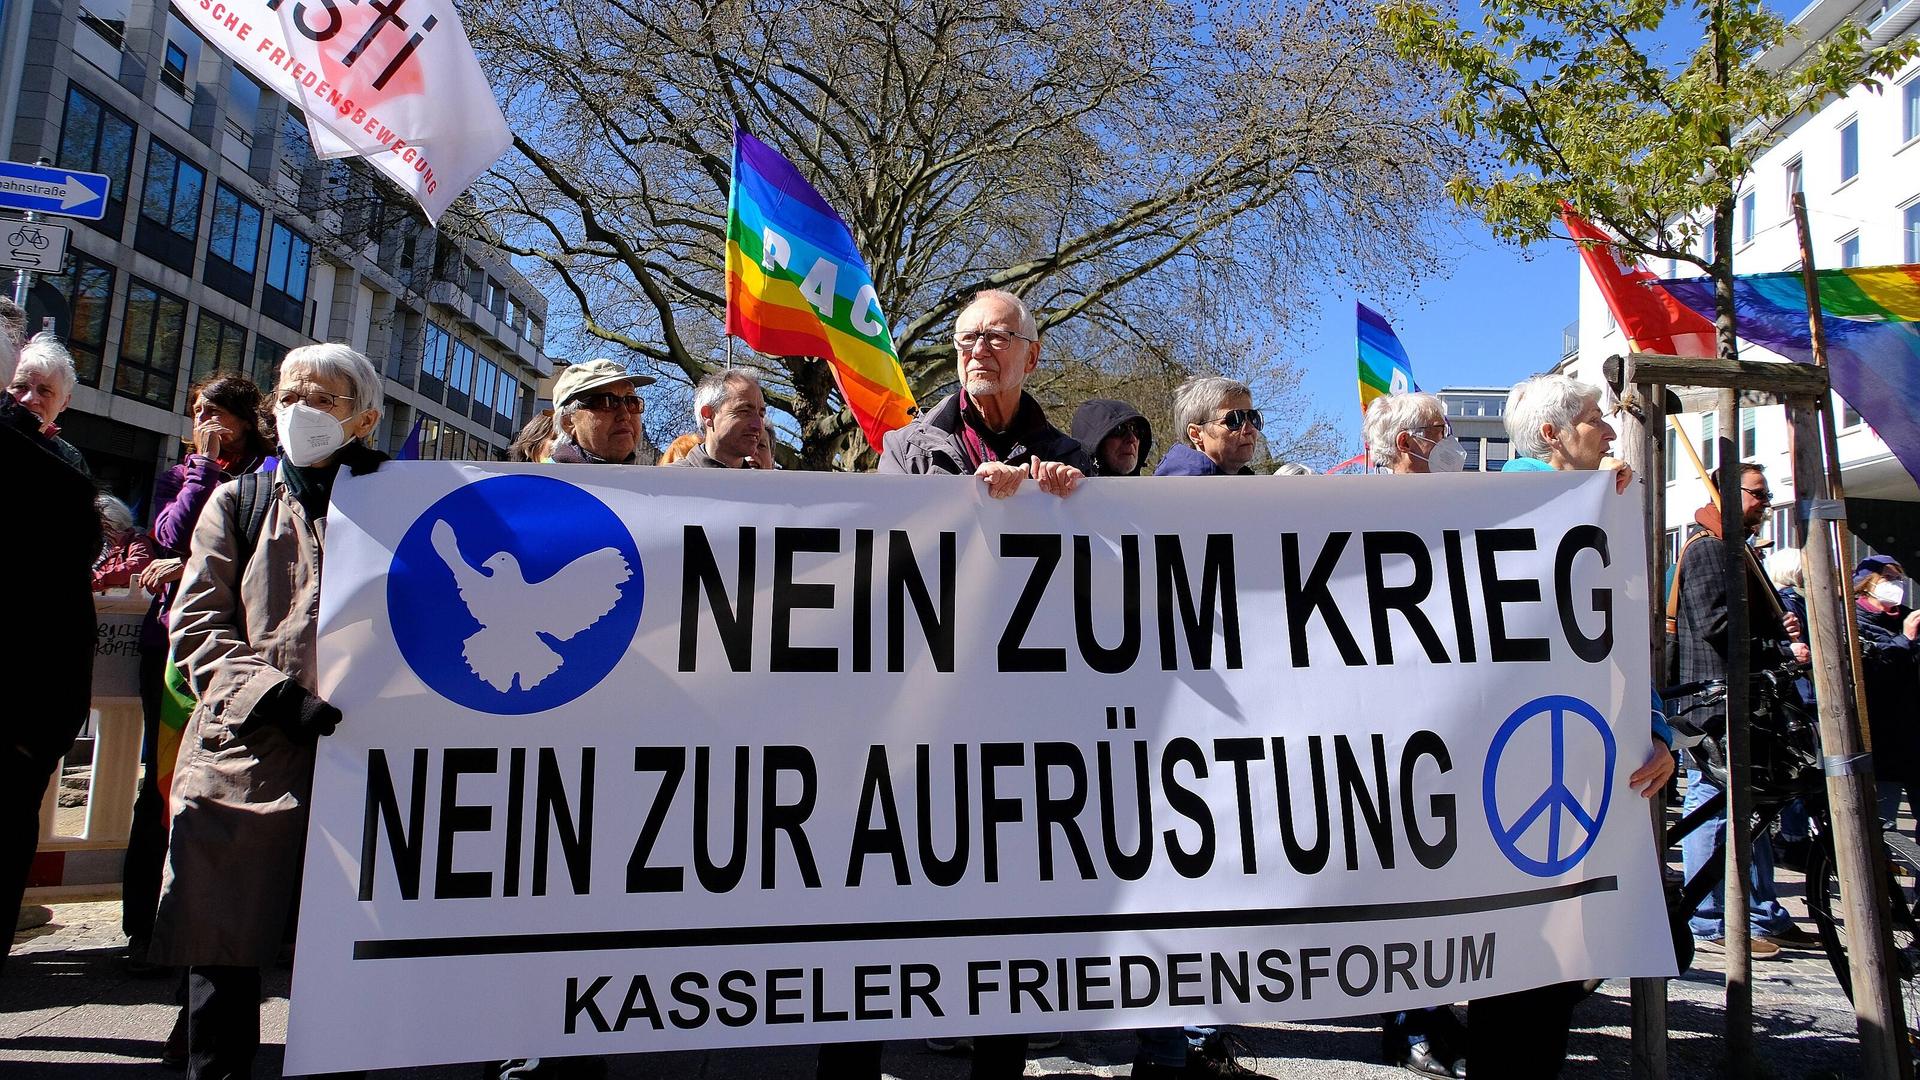 Beim Ostermarsch in Kassel ist ein Banner mit der Aufschrift "Nein zum Krieg - Nein zur Aufrüstung" zu sehen.